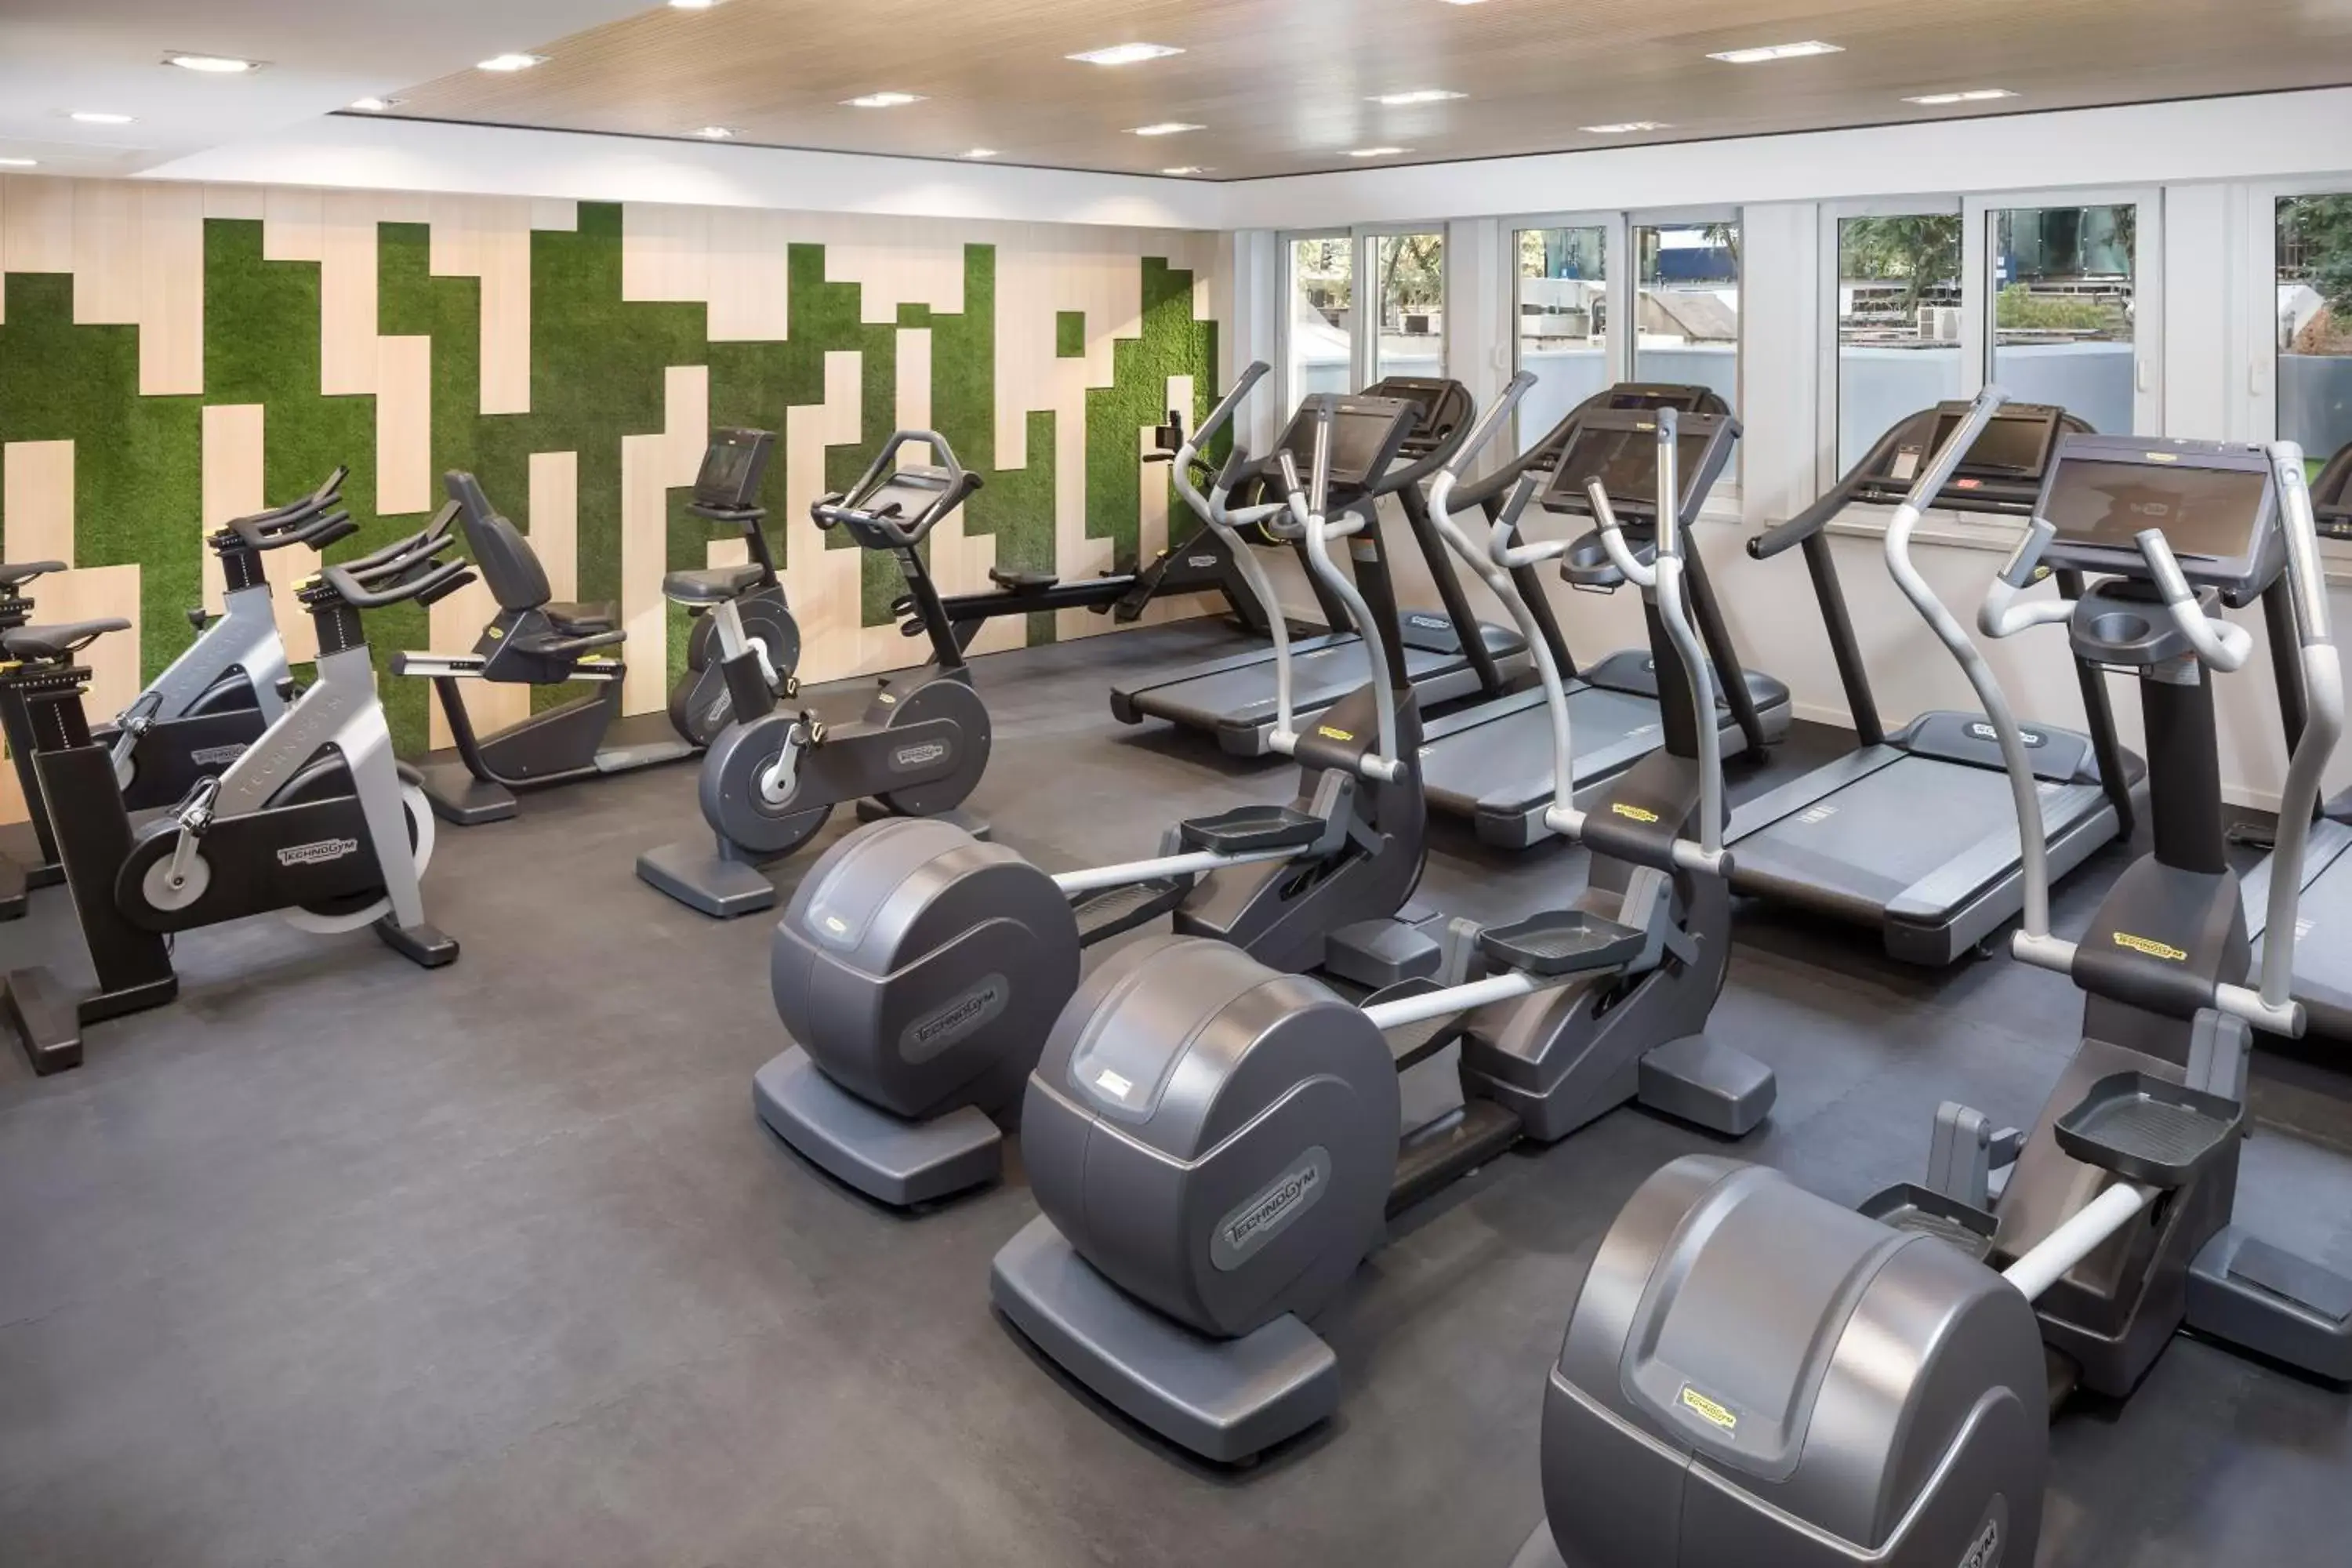 Fitness centre/facilities, Fitness Center/Facilities in Melia Castilla